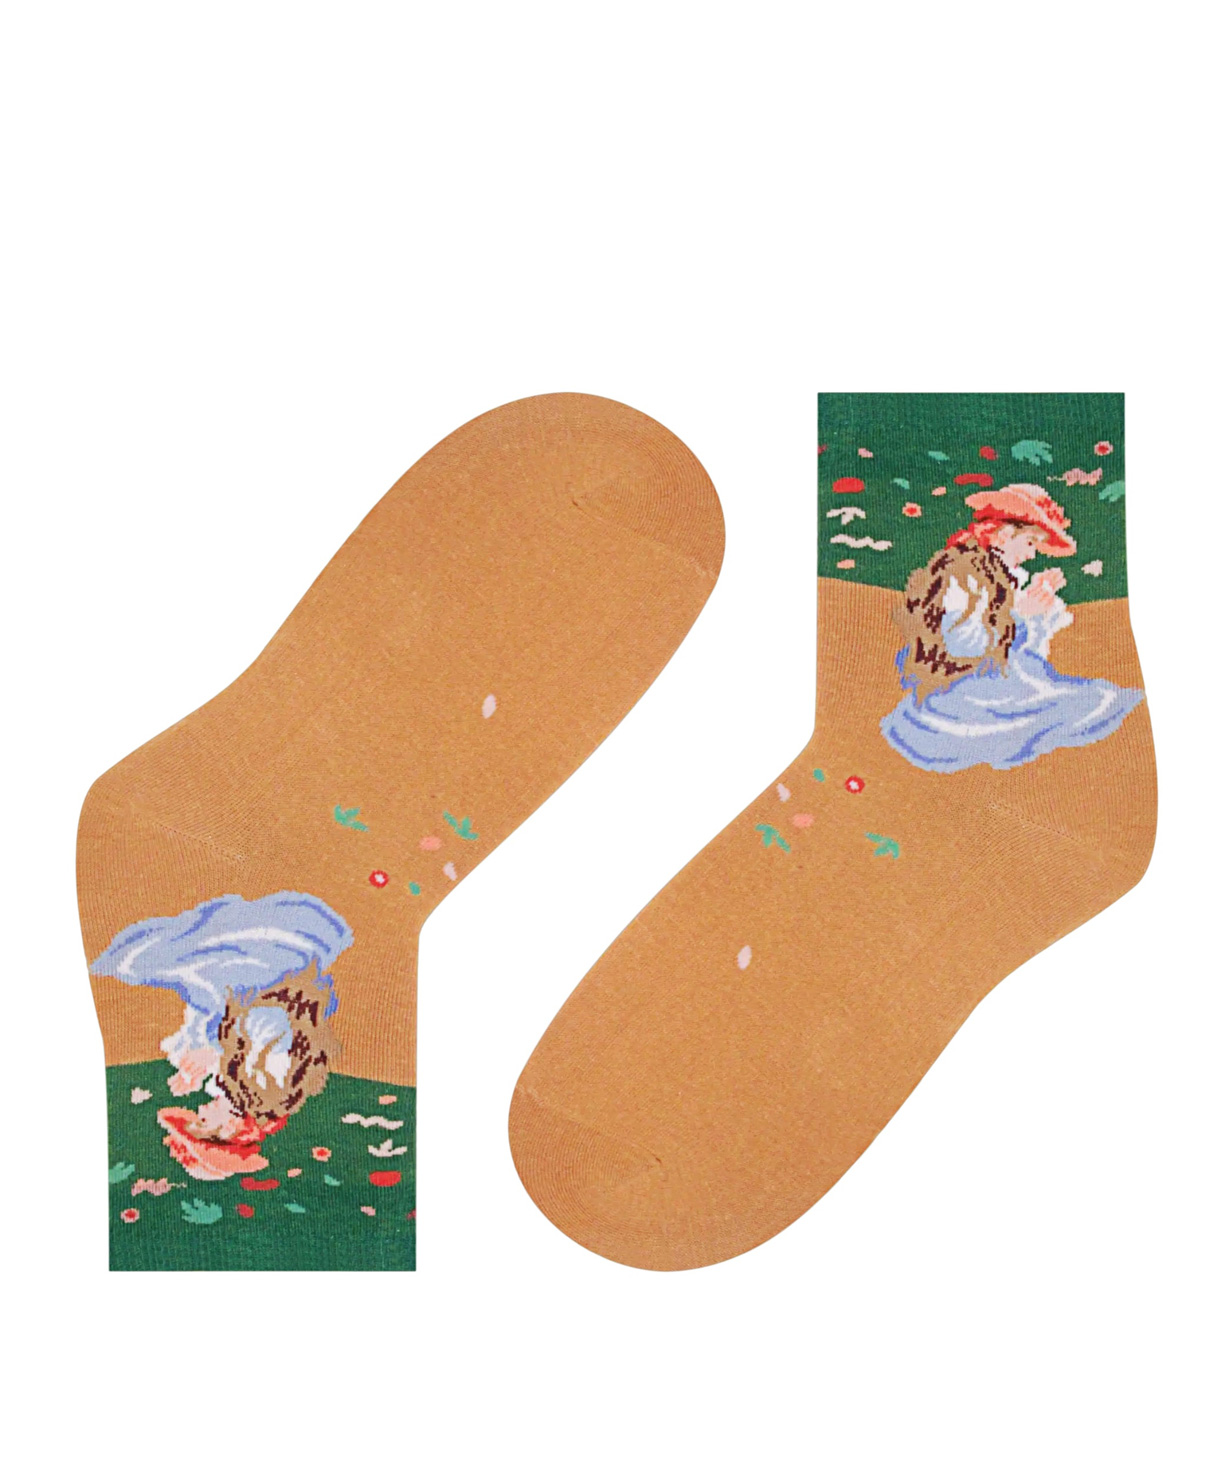 Socks `Zeal Socks` little girl in a field